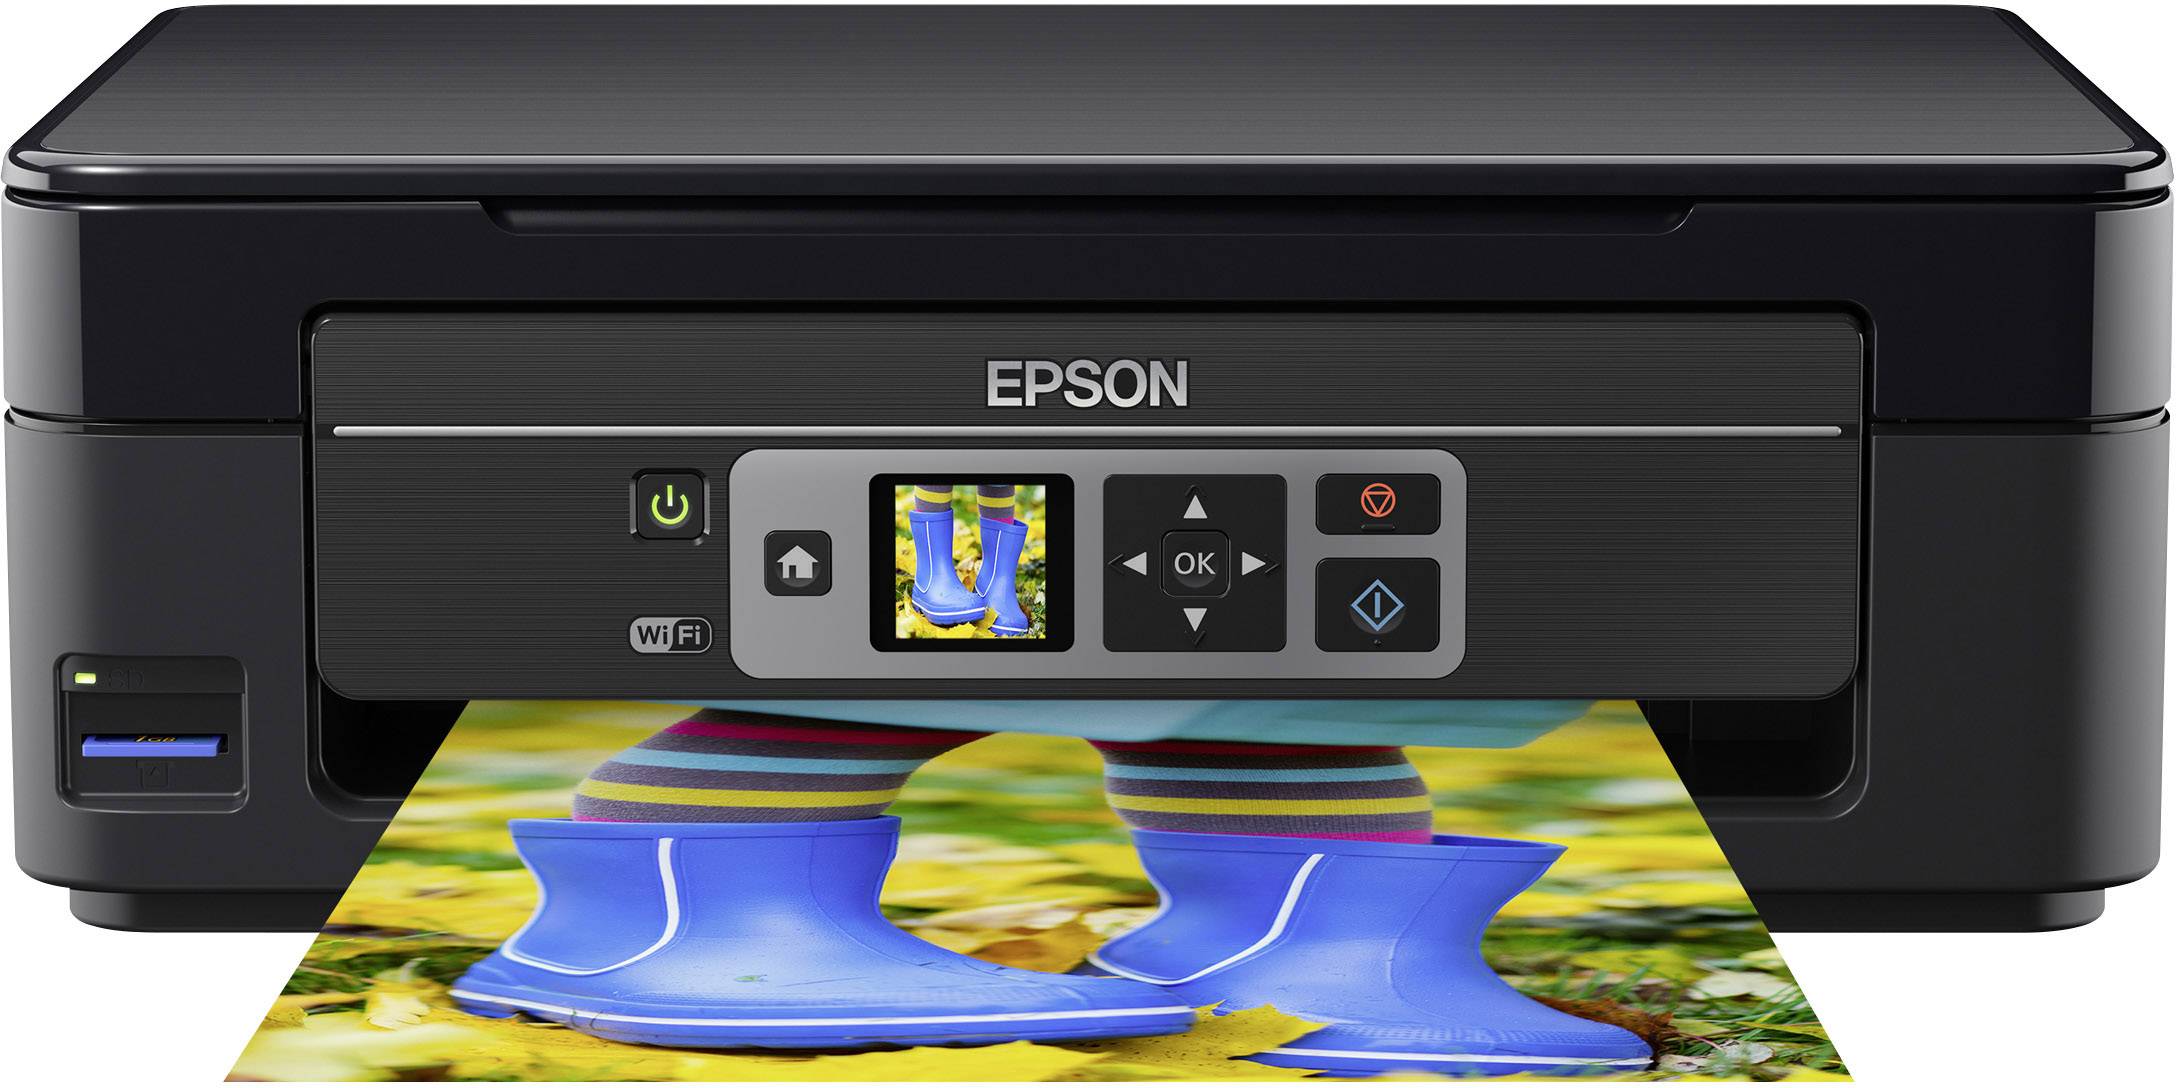 Epson Xp 310 Scan To Computer Driver Para Impresor Epson Xp 310 Windows 7 Descargar 1740